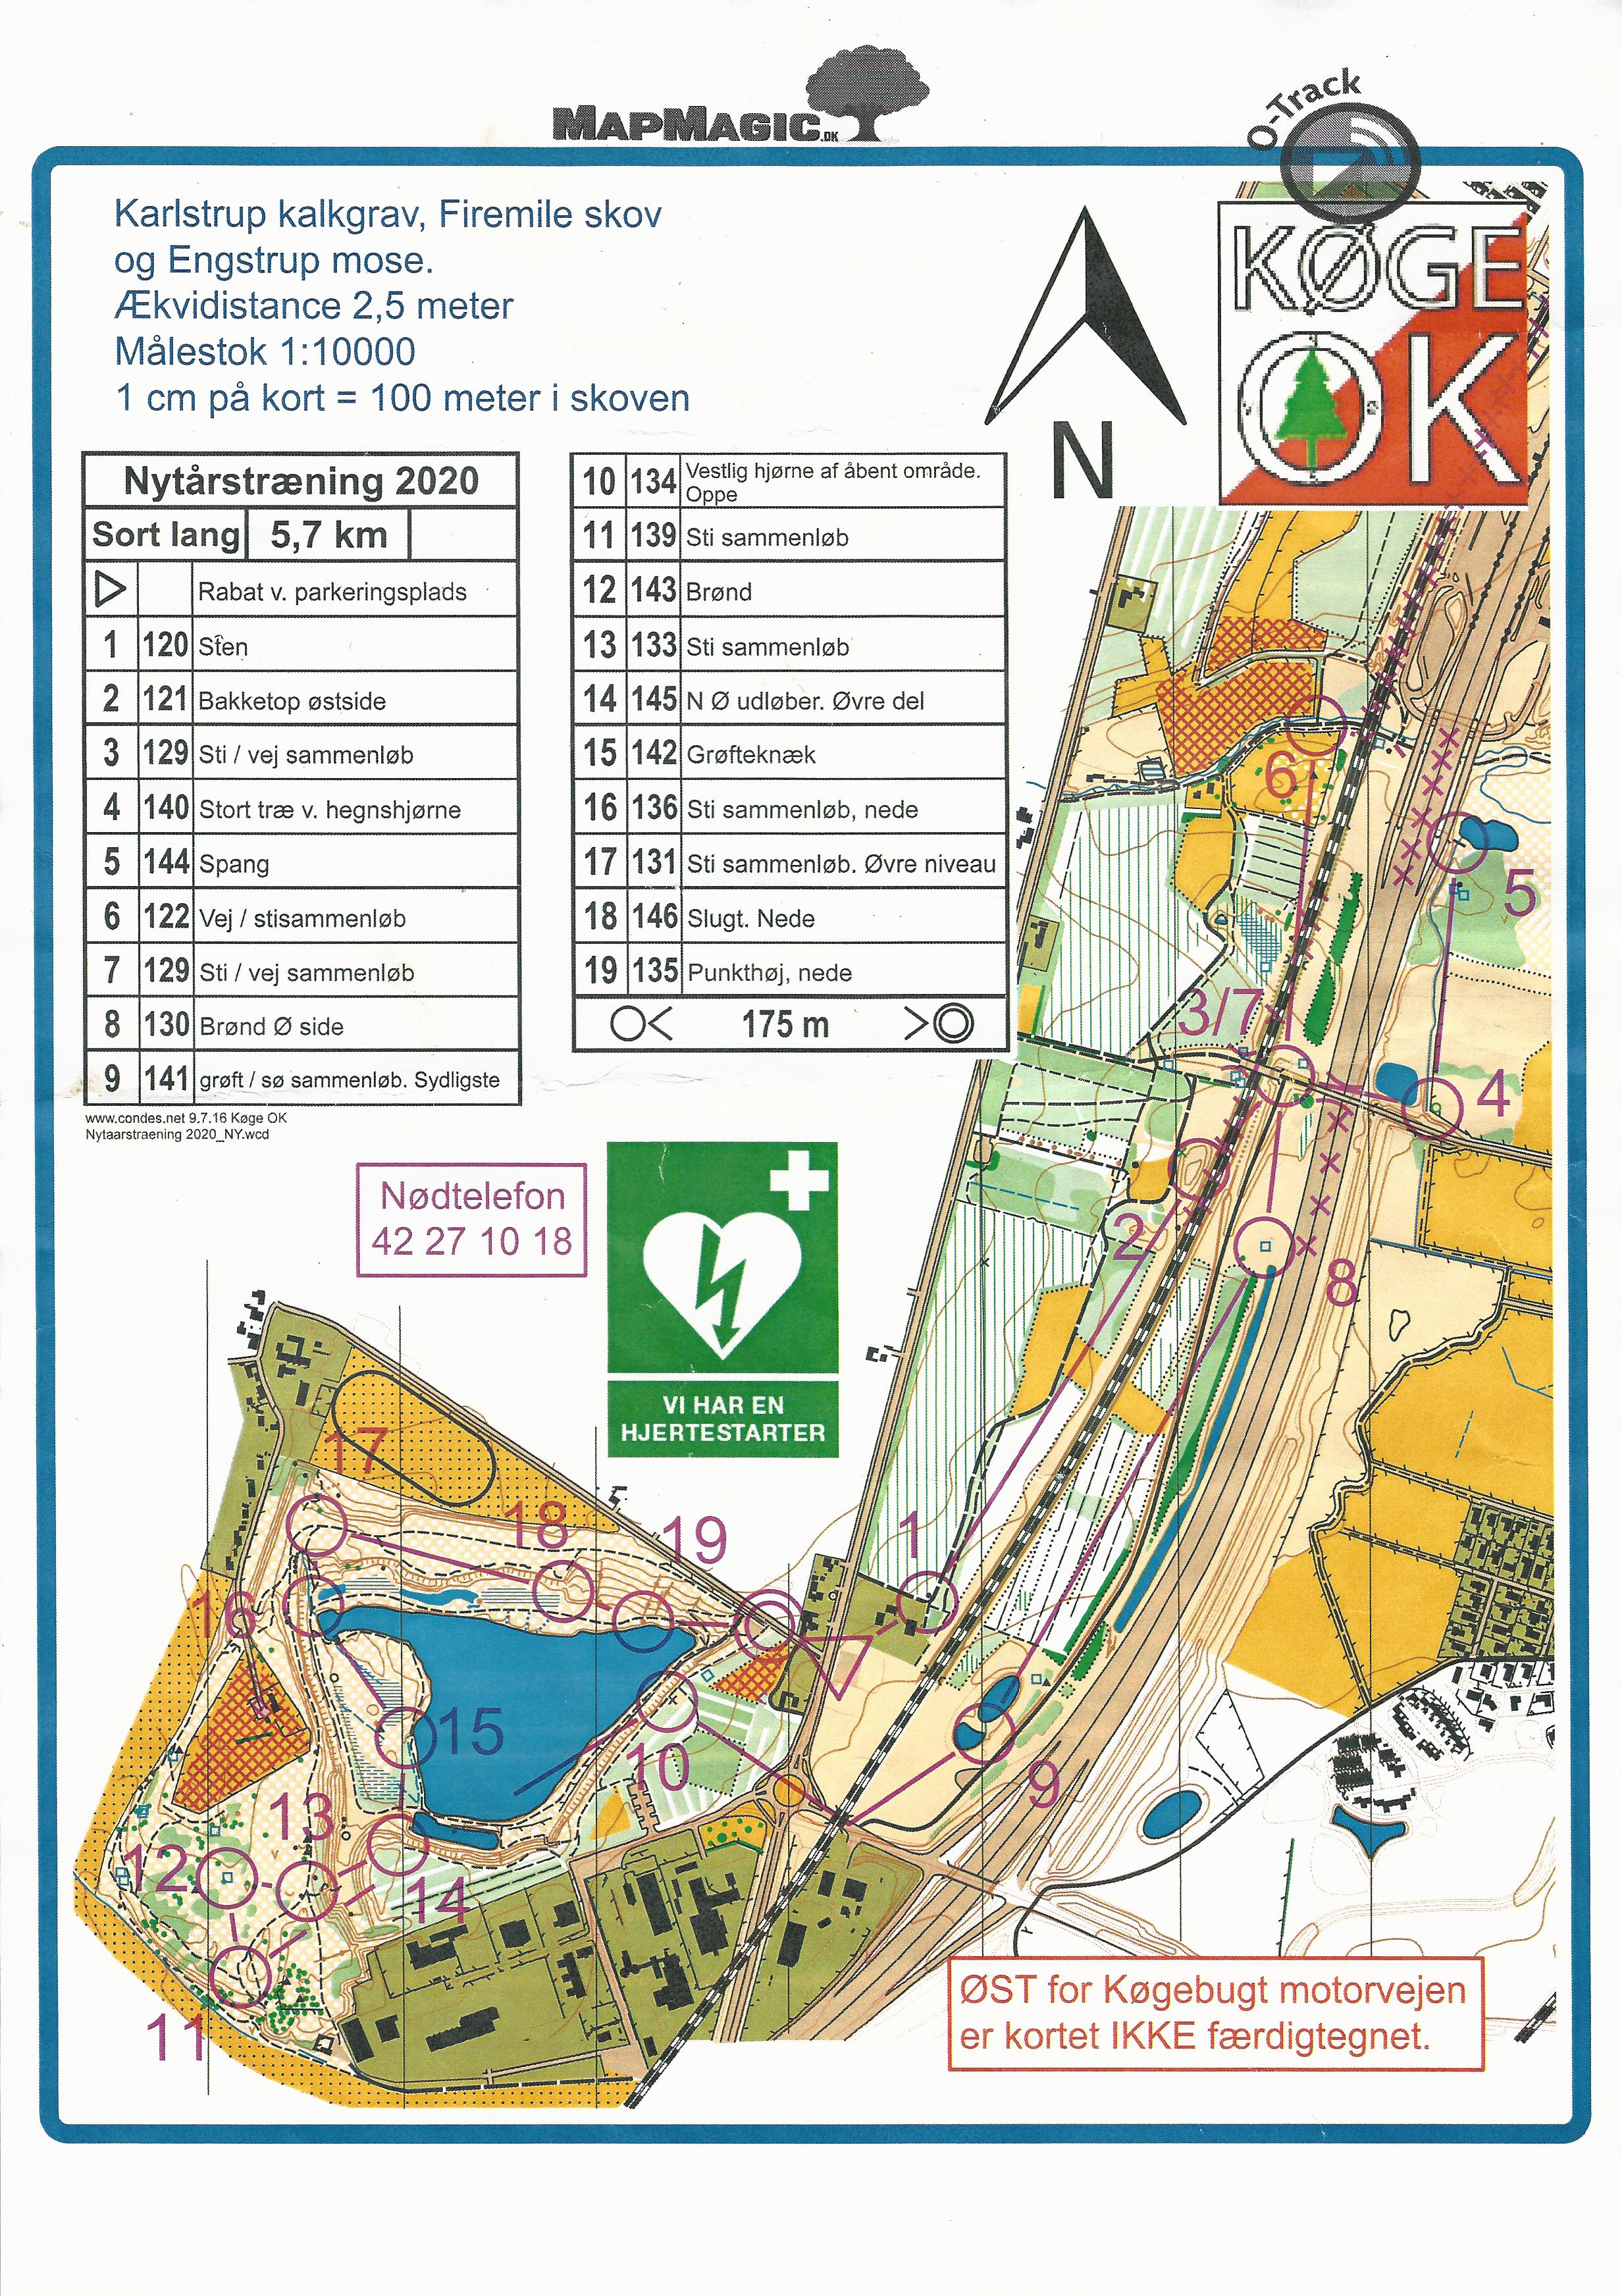 Nytårstræningsløb, Karlstrup Kalkgrav, Sort Lang (05.01.2020)